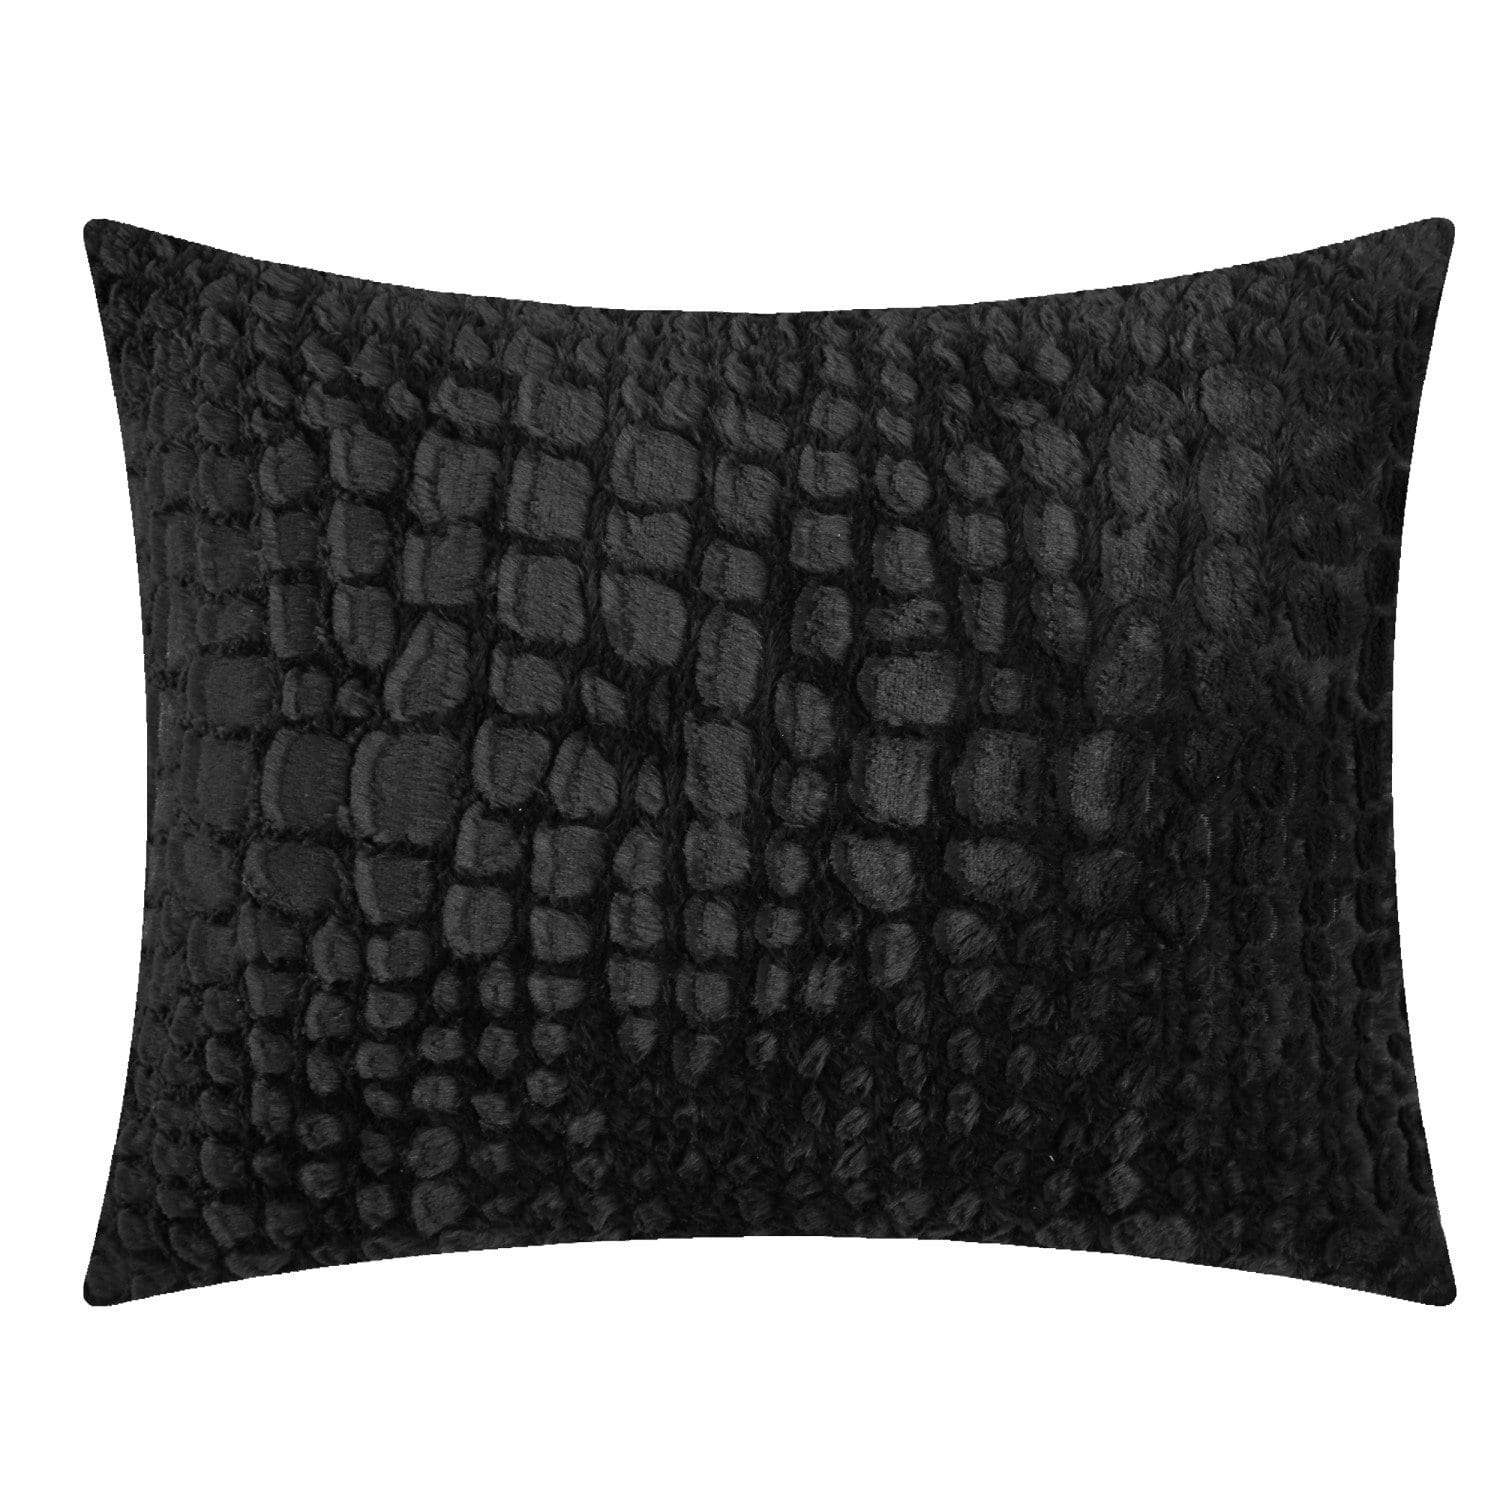 Alligator 3 Piece Faux Fur Comforter Set